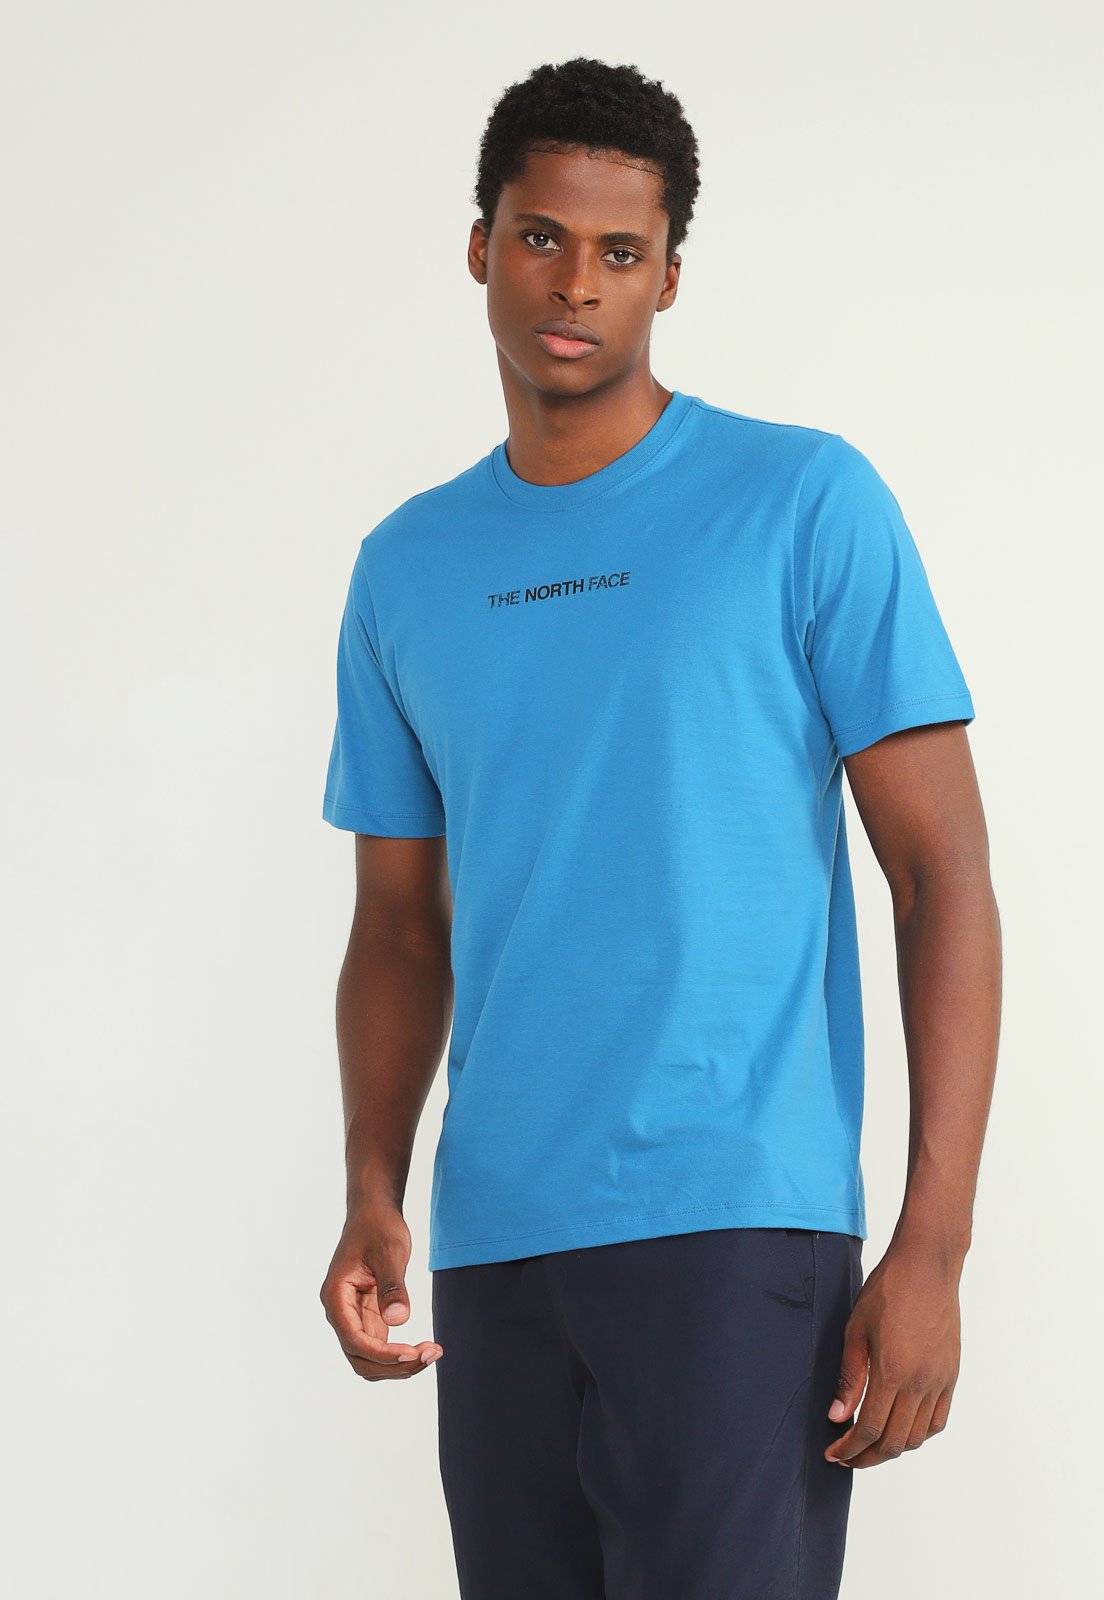 Camiseta The North Face Logo Play Azul - Compre Agora